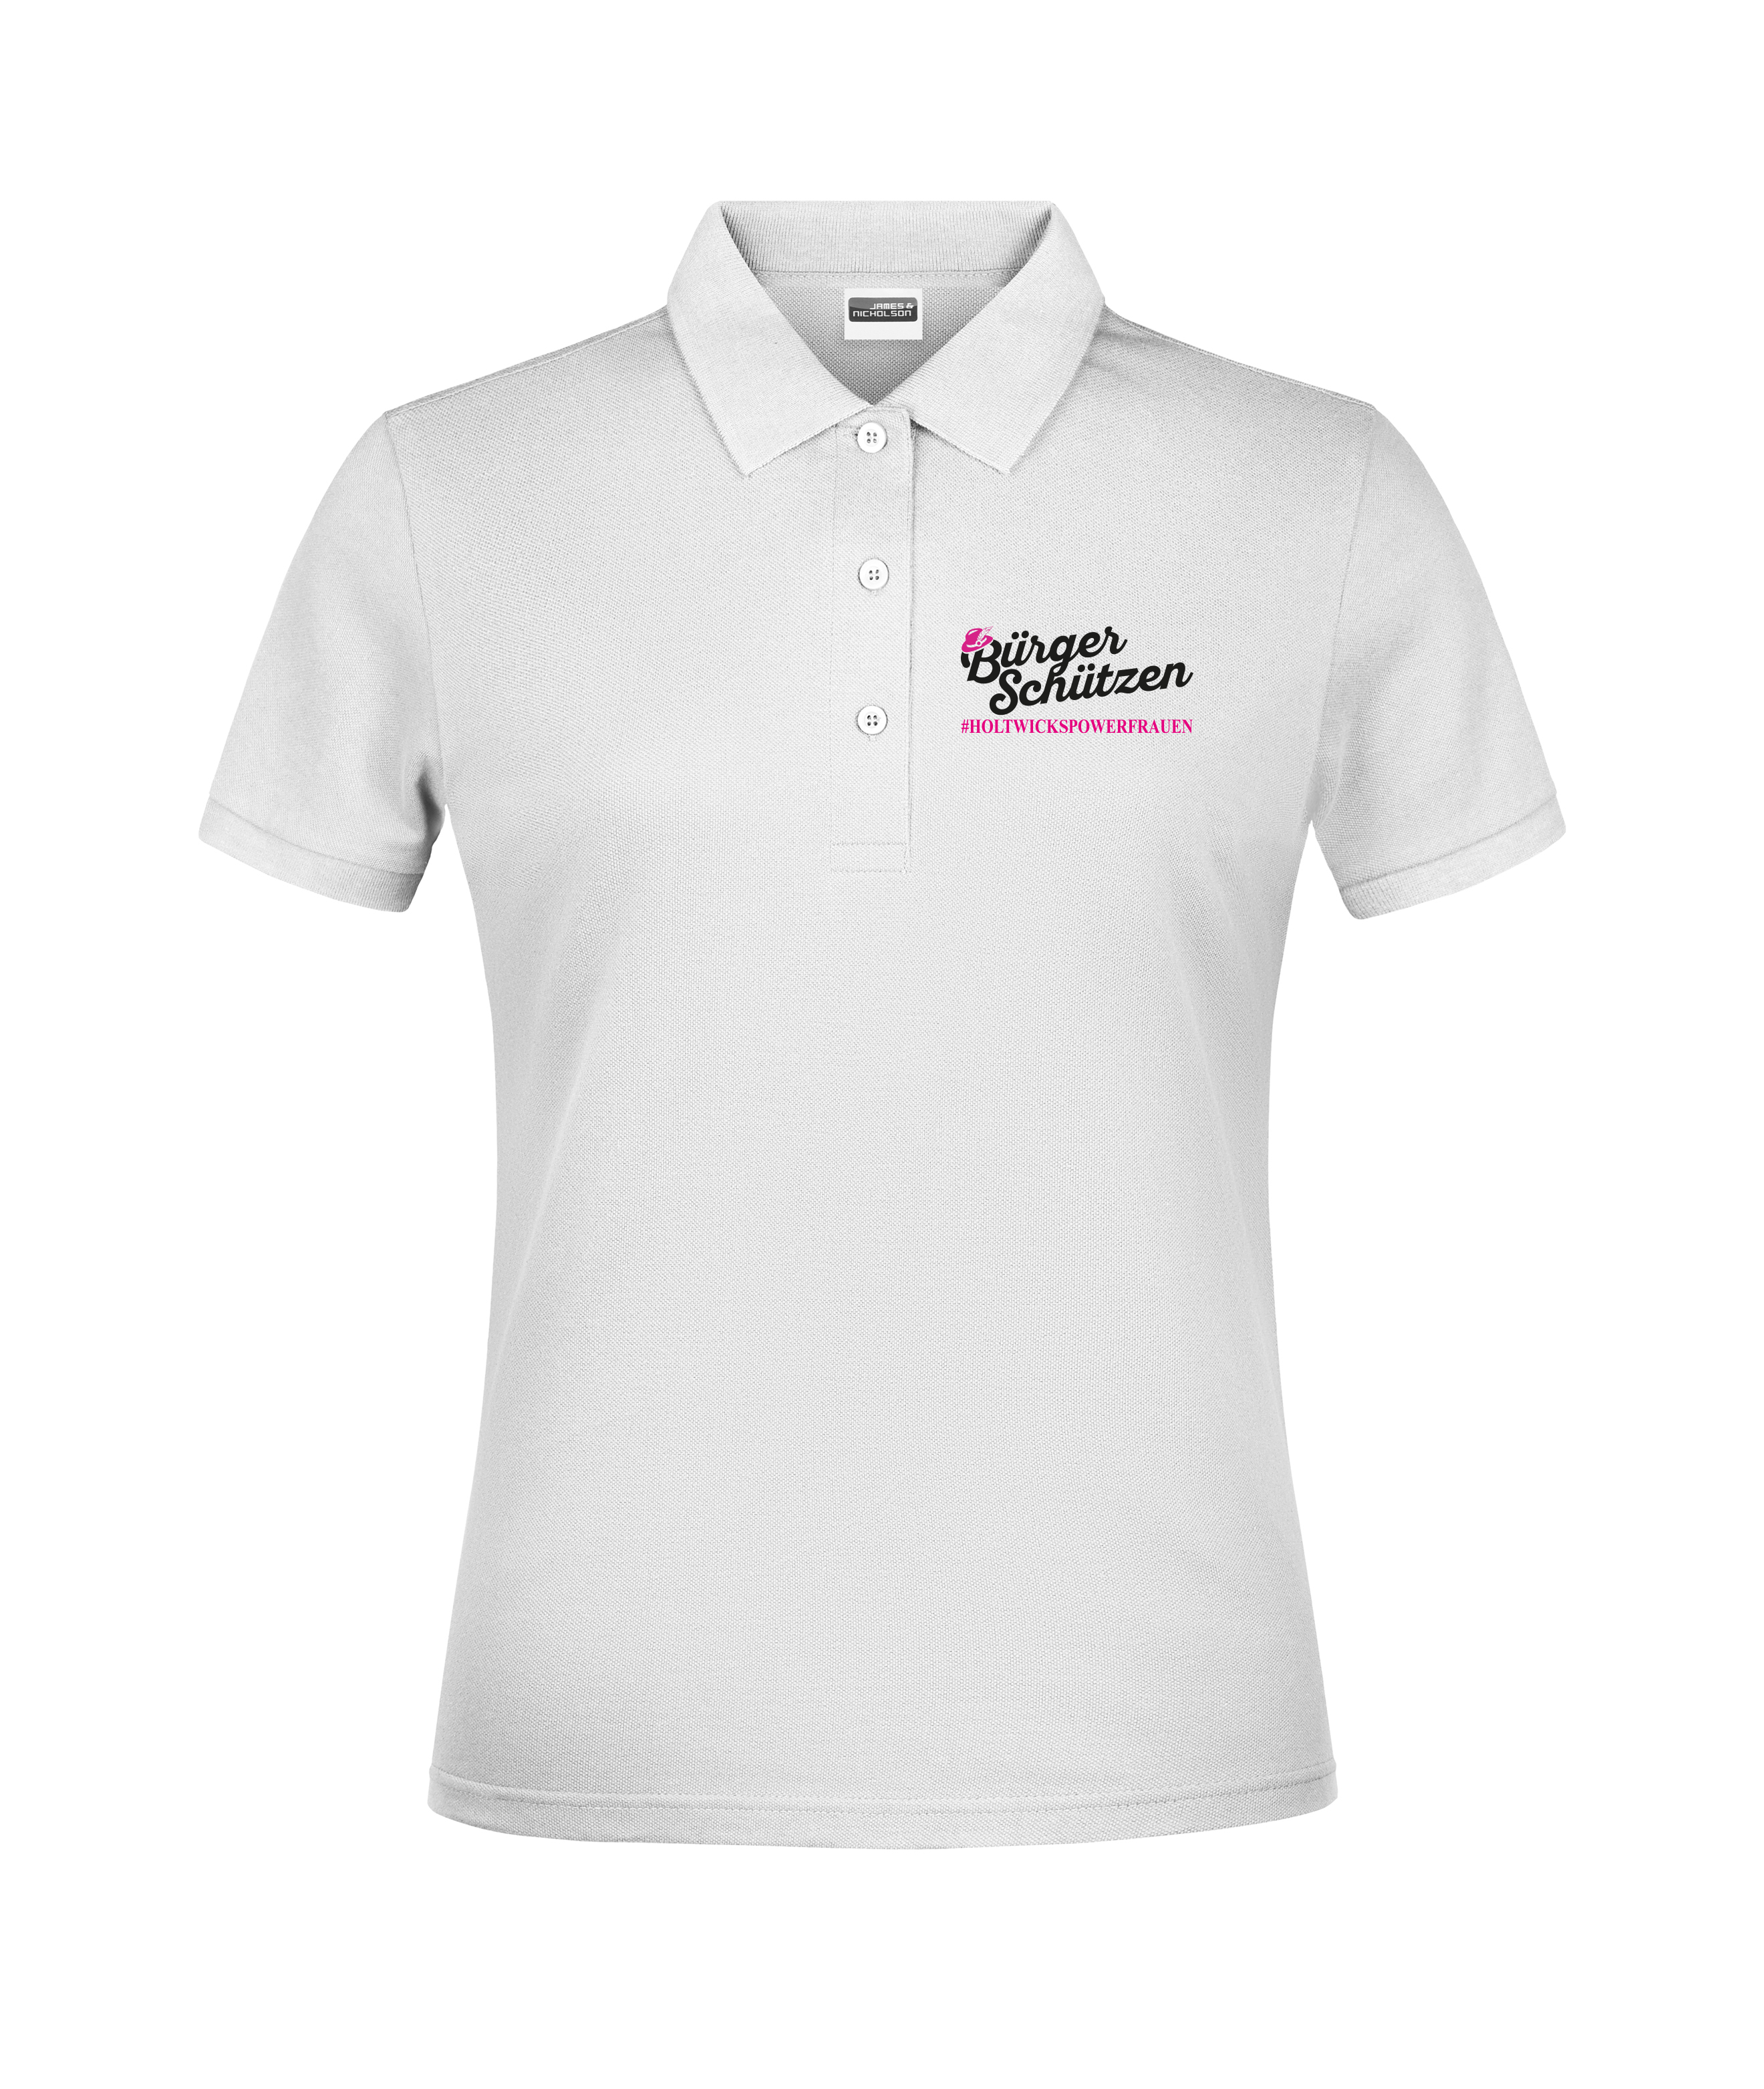 "#Holtwickspowerfrauen" - Damen-Poloshirt